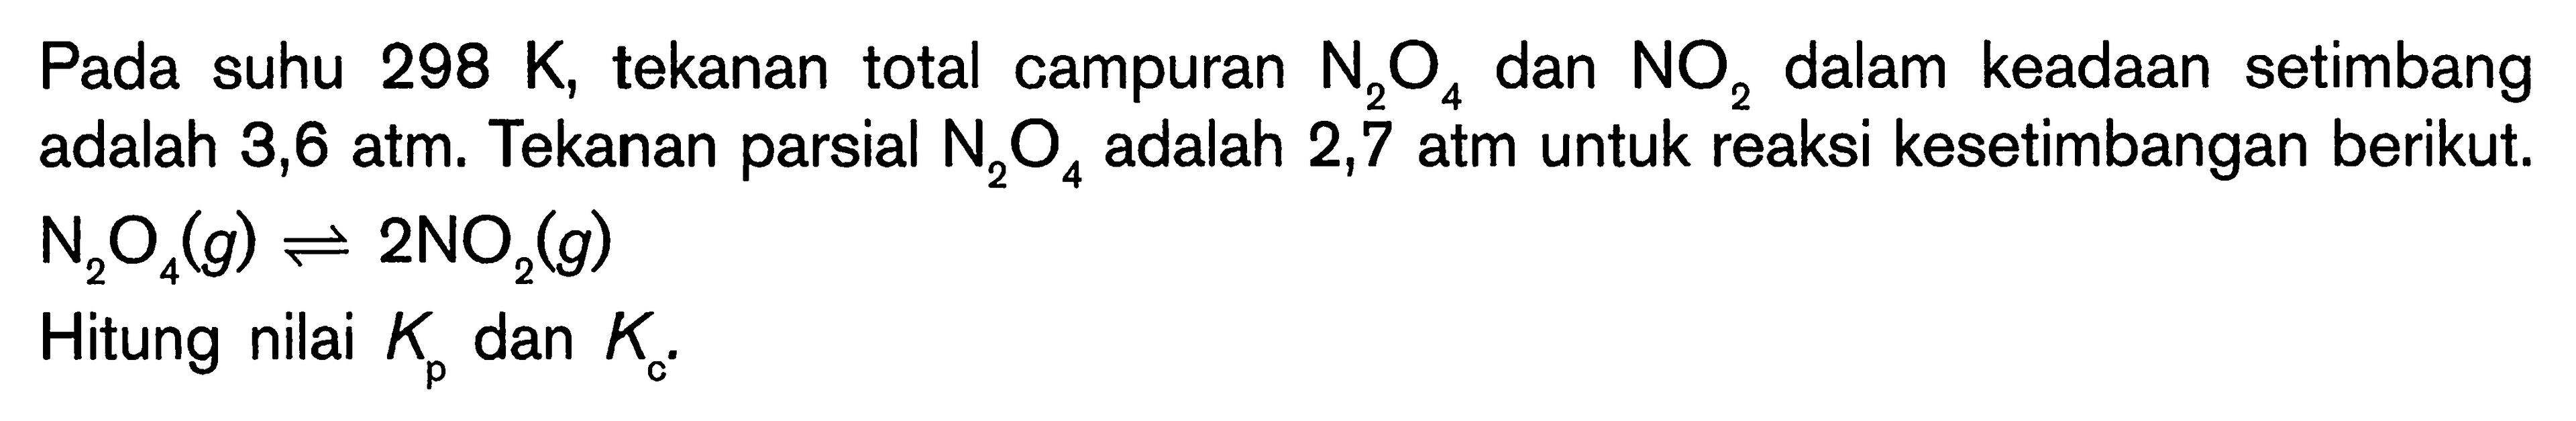 Pada suhu 298 K, tekanan total campuran N2O4 dan NO2 dalam keadaan setimbang adalah 3,6 atm. Tekanan parsial N2O4 adalah 2,7 atm untuk reaksi kesetimbangan berikut: N2O4(g) <=> 2NO2(g) Hitung nilai Kp dan Ke